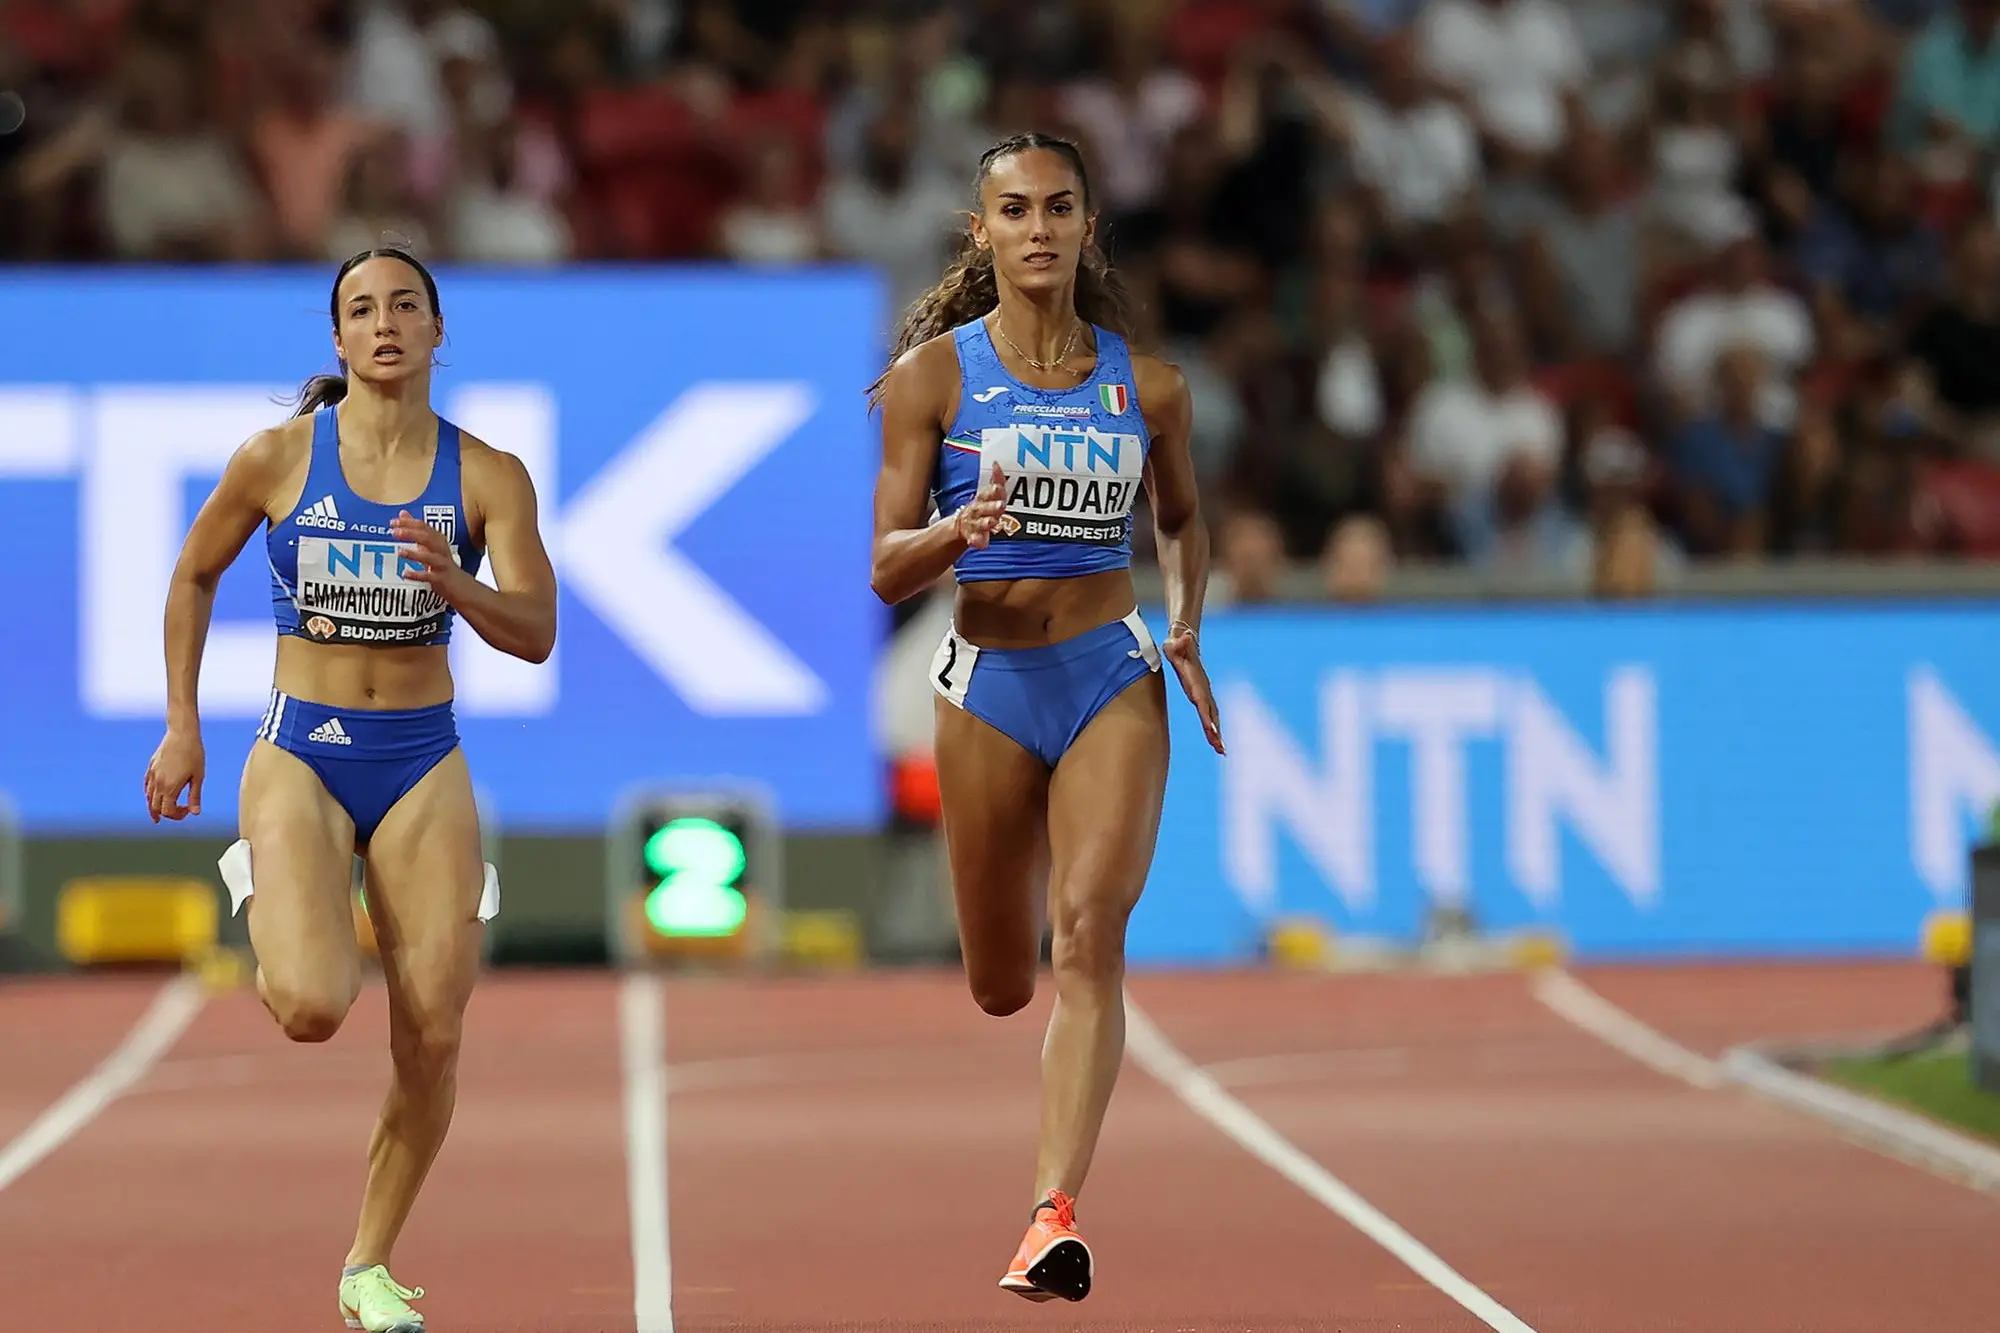 La 4x100 azzurra, con Dalia Kaddari in seconda frazione, centra record italiano e finale mondiale (foto Ansa)